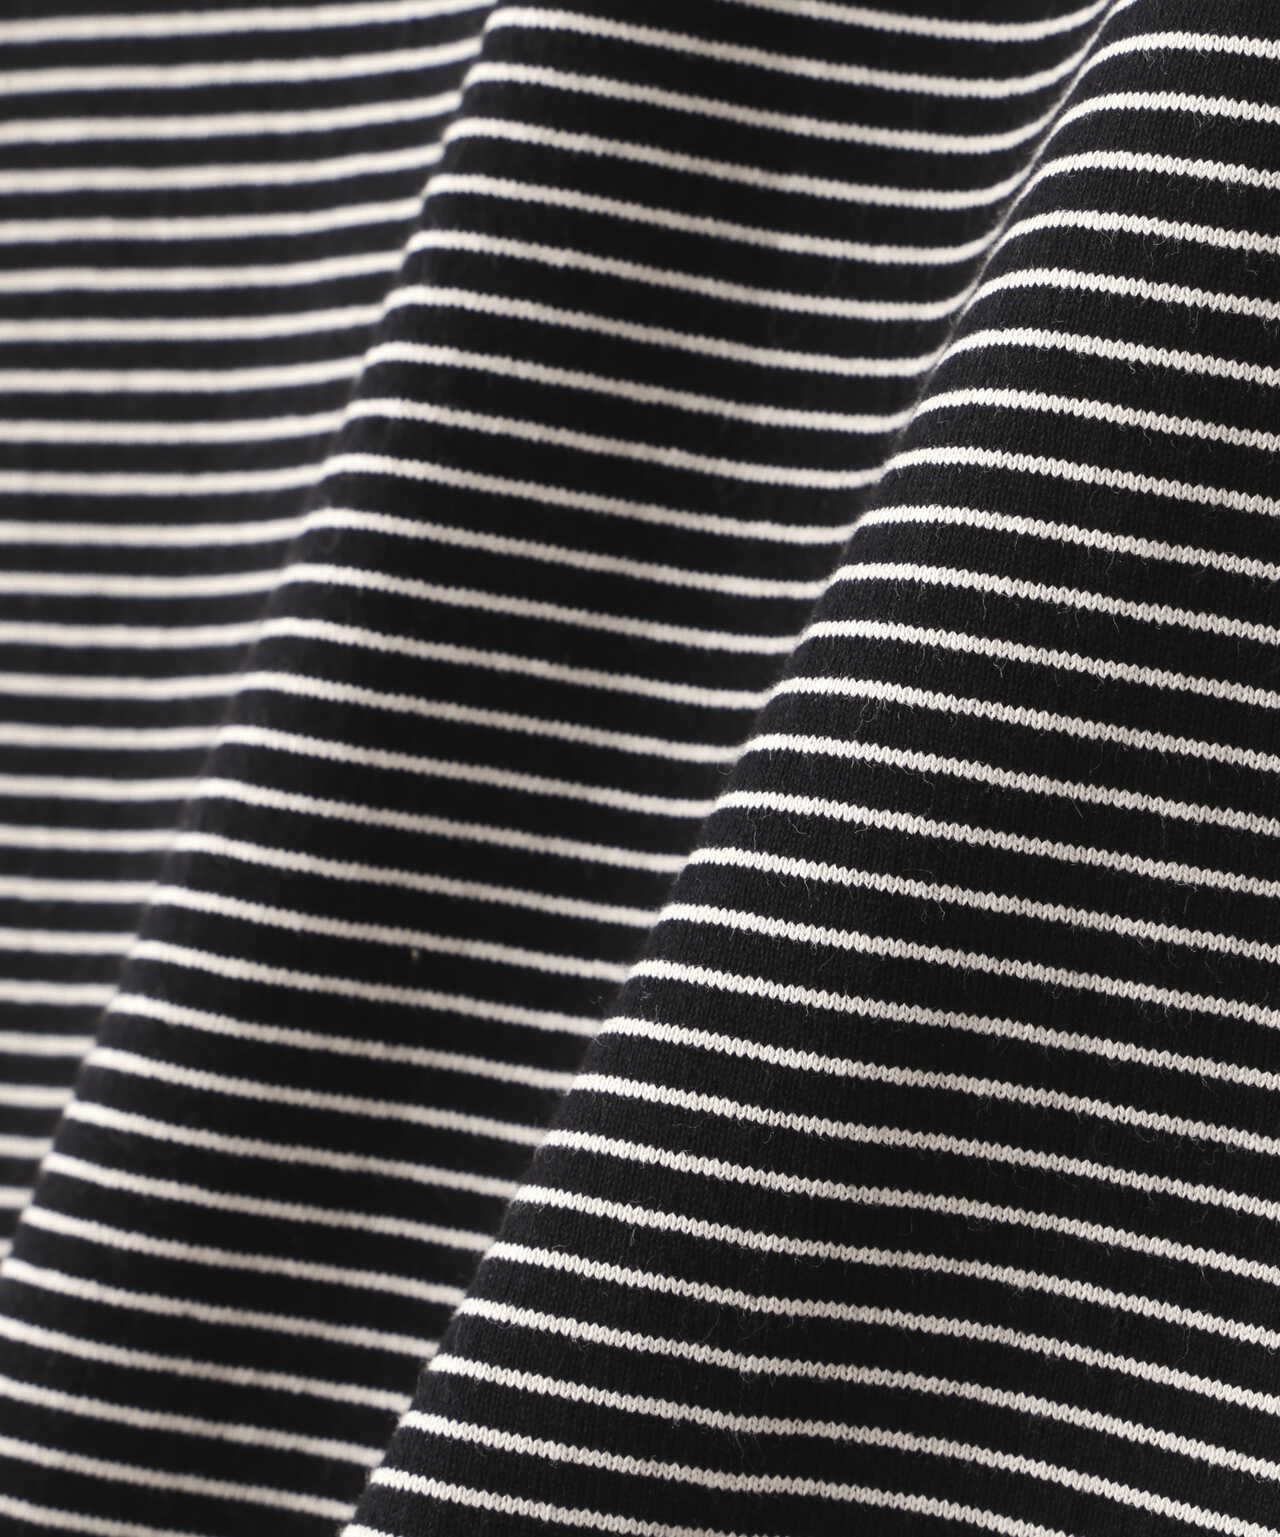 WEB LIMITED】BLIND STRIPE T-SHIRT/ブラインドストライプ Tシャツ